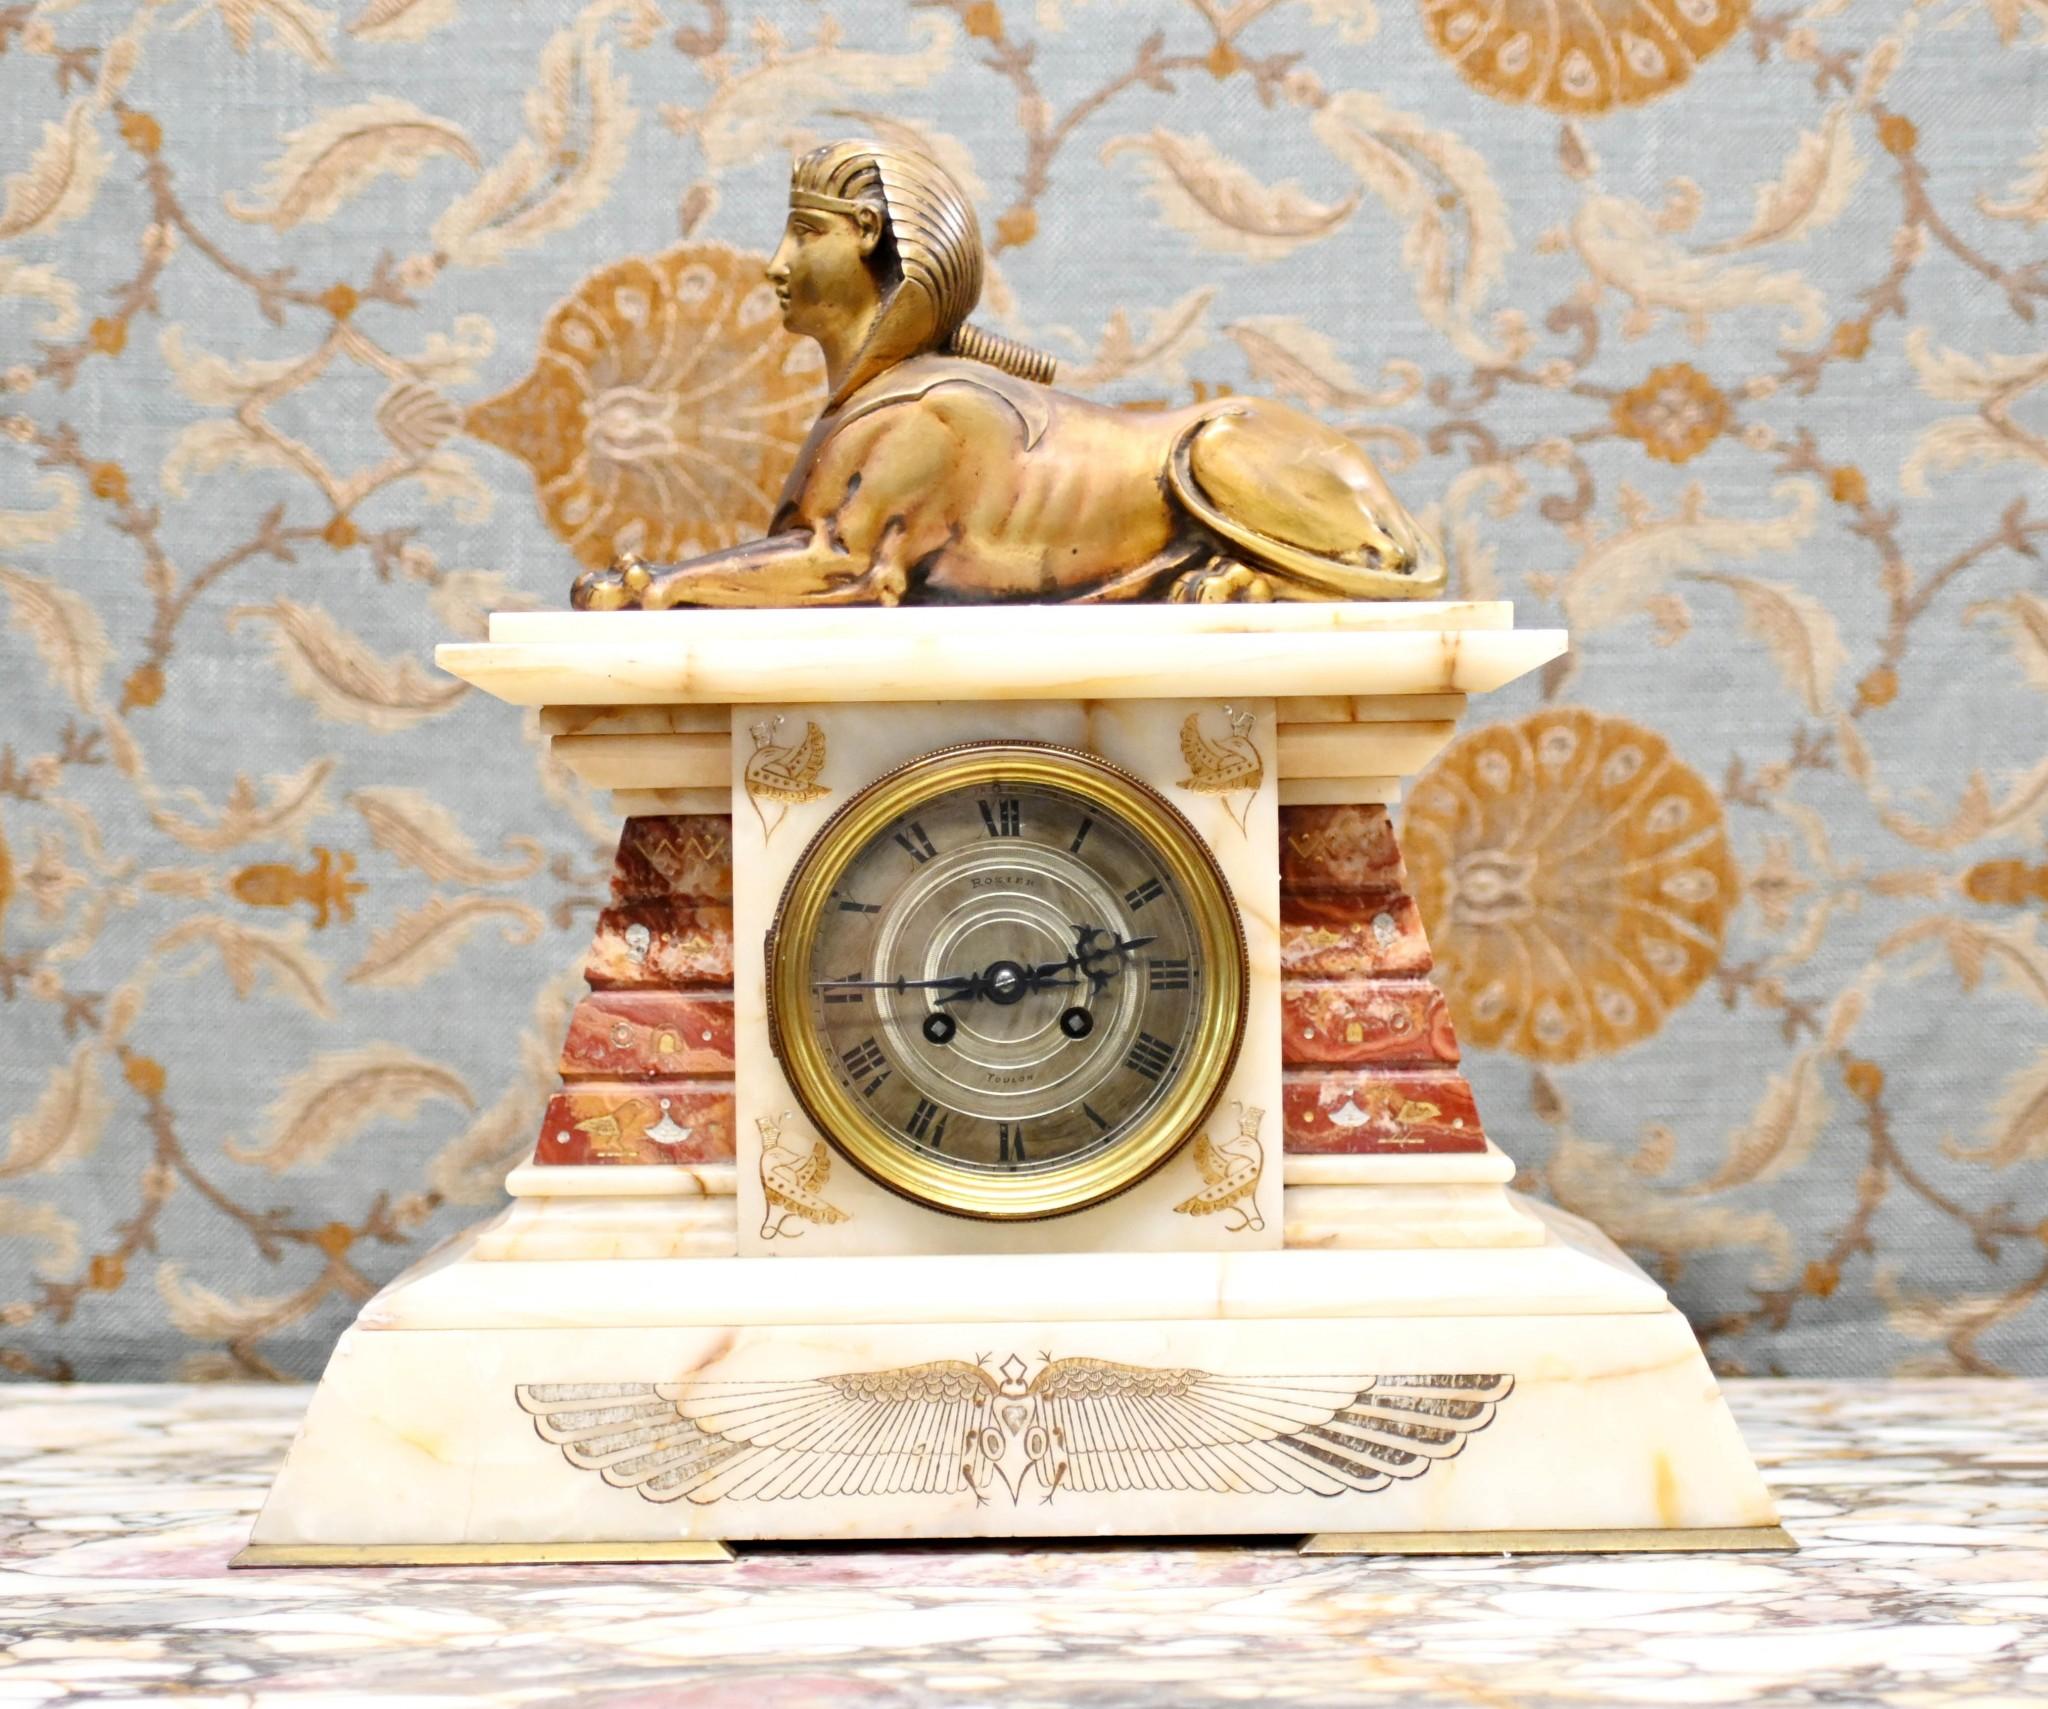 Prächtige französische Empire-Kaminuhr aus Marmor und Gold
Das Stück wird von der vergoldeten Sphinx - einem sehr hohen Reich - gekrönt.
Klassischer ägyptischer Stil mit speziellen Marmorsockeln und ägyptischen Motiven
Zifferblatt mit Inschrift